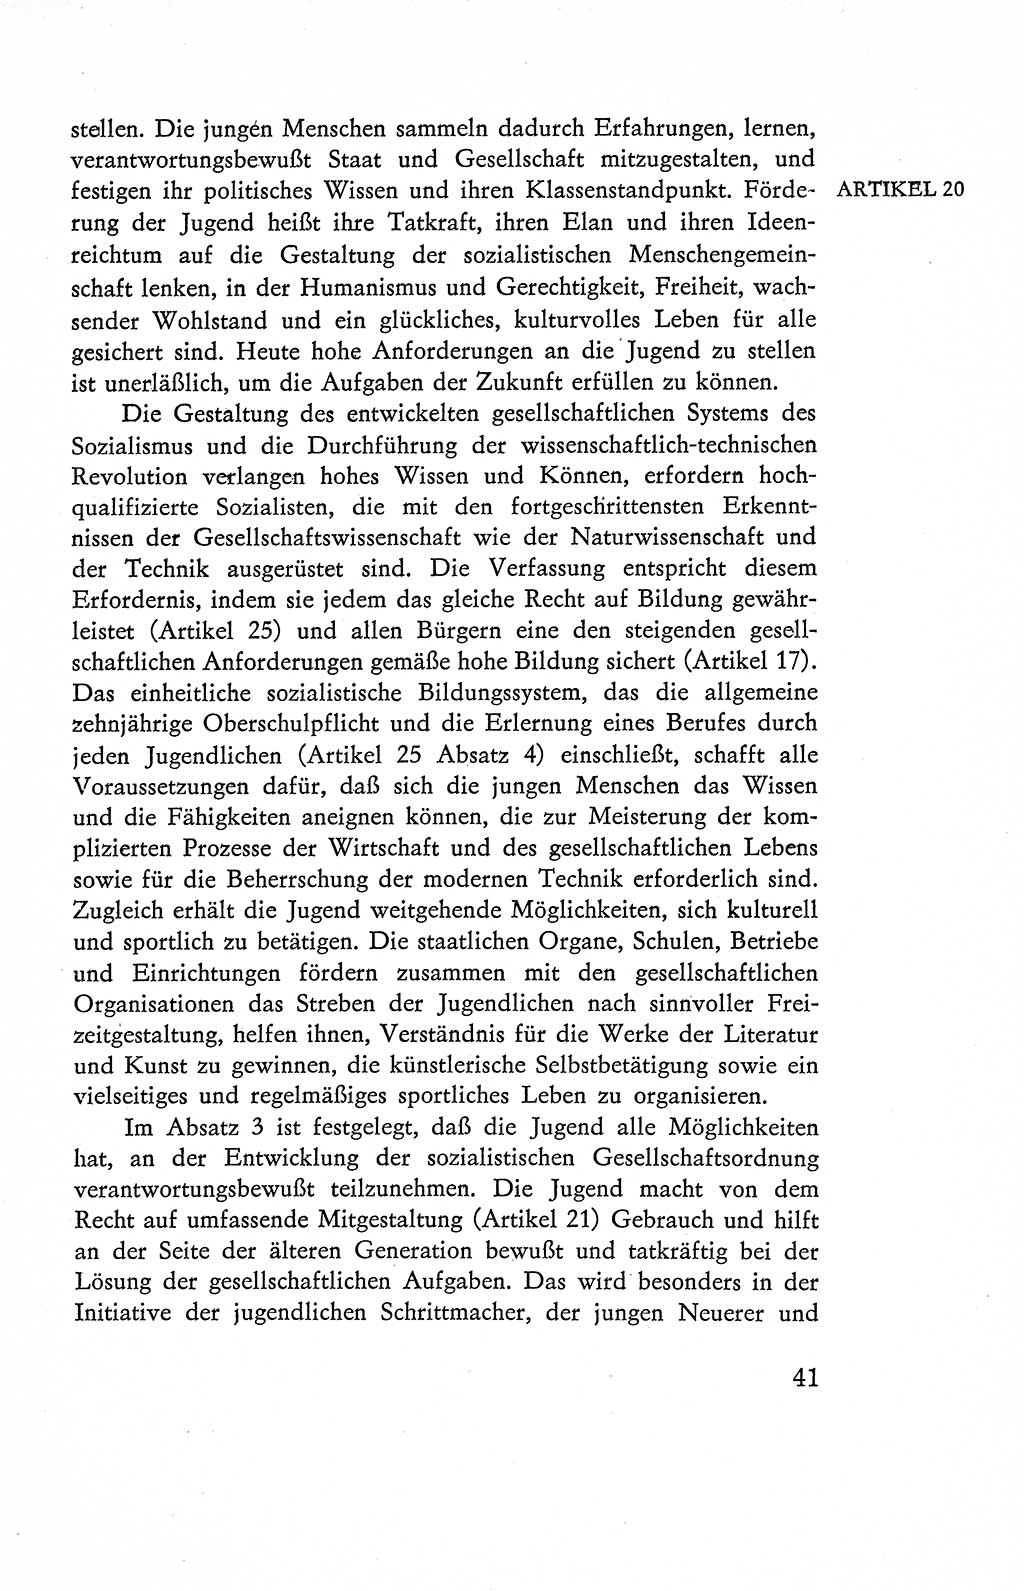 Verfassung der Deutschen Demokratischen Republik (DDR), Dokumente, Kommentar 1969, Band 2, Seite 41 (Verf. DDR Dok. Komm. 1969, Bd. 2, S. 41)